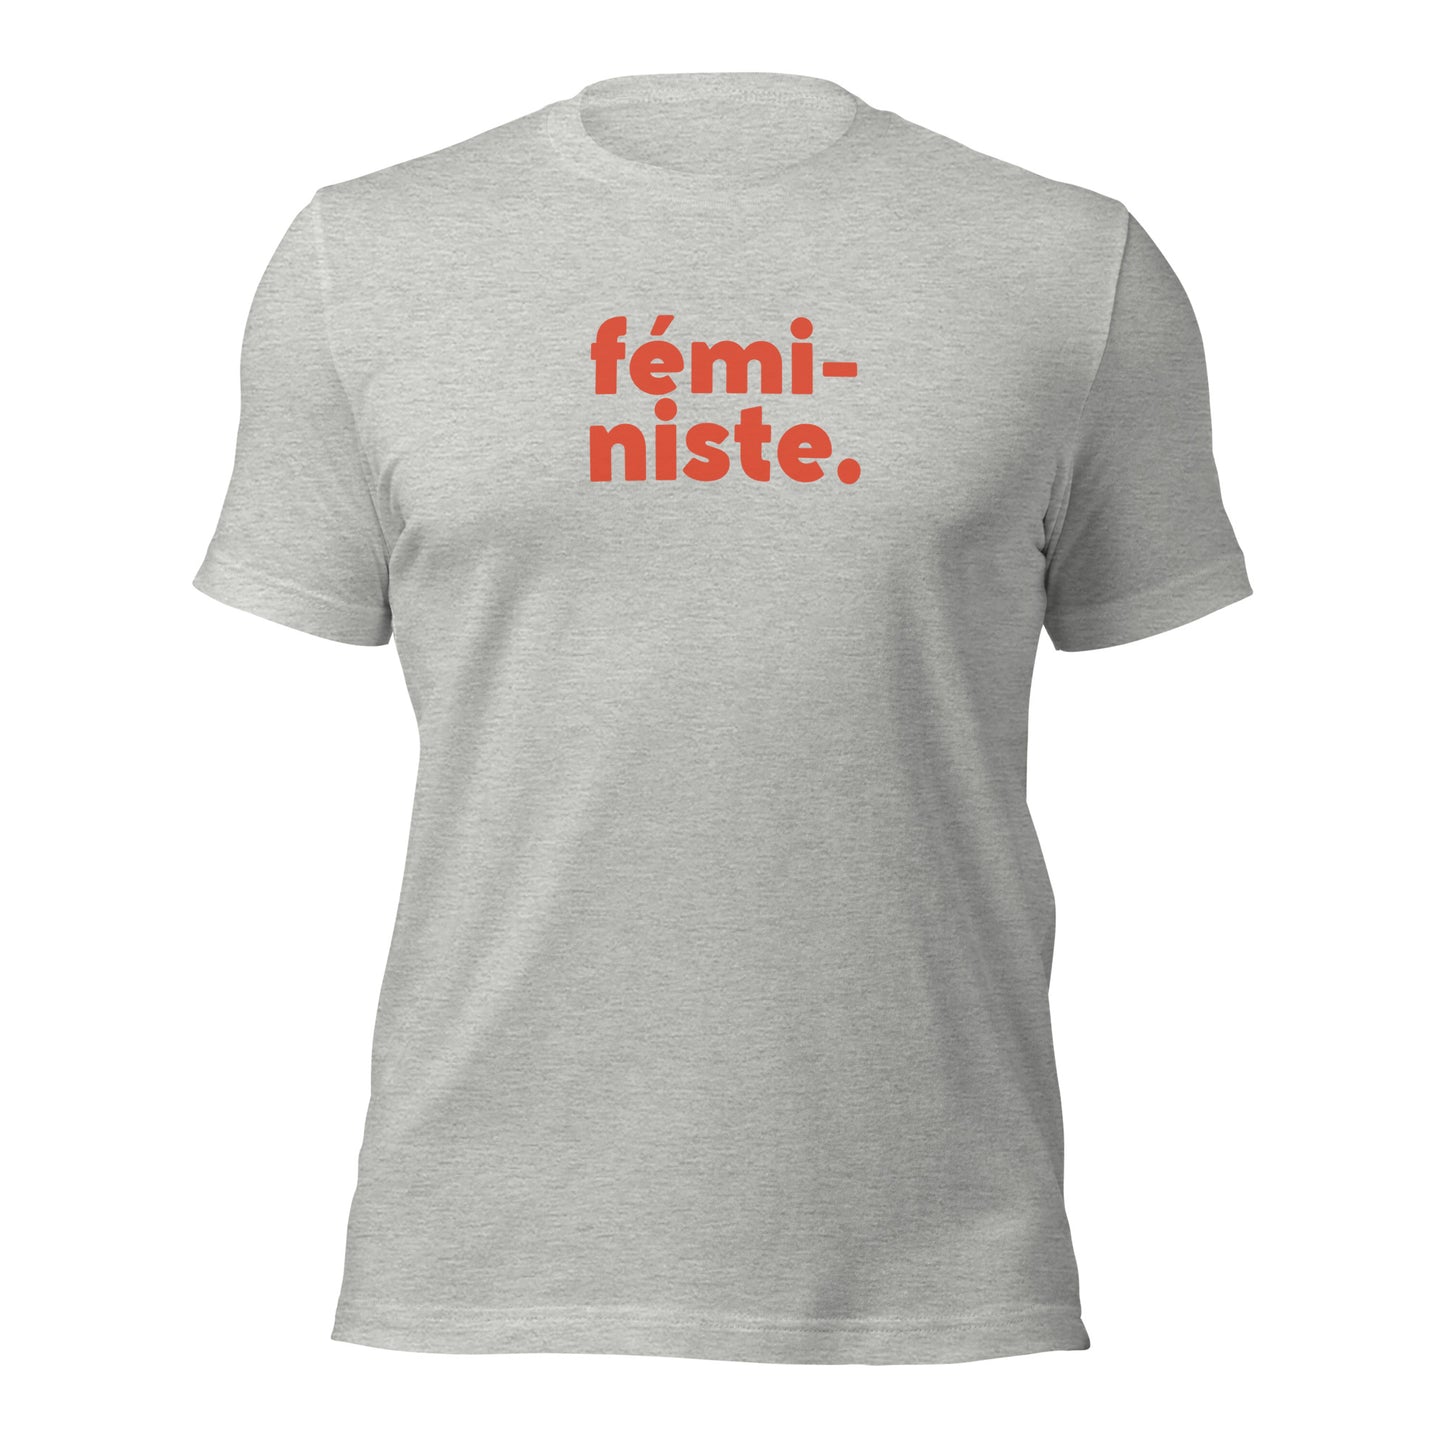 Feministe Unisex T-Shirt